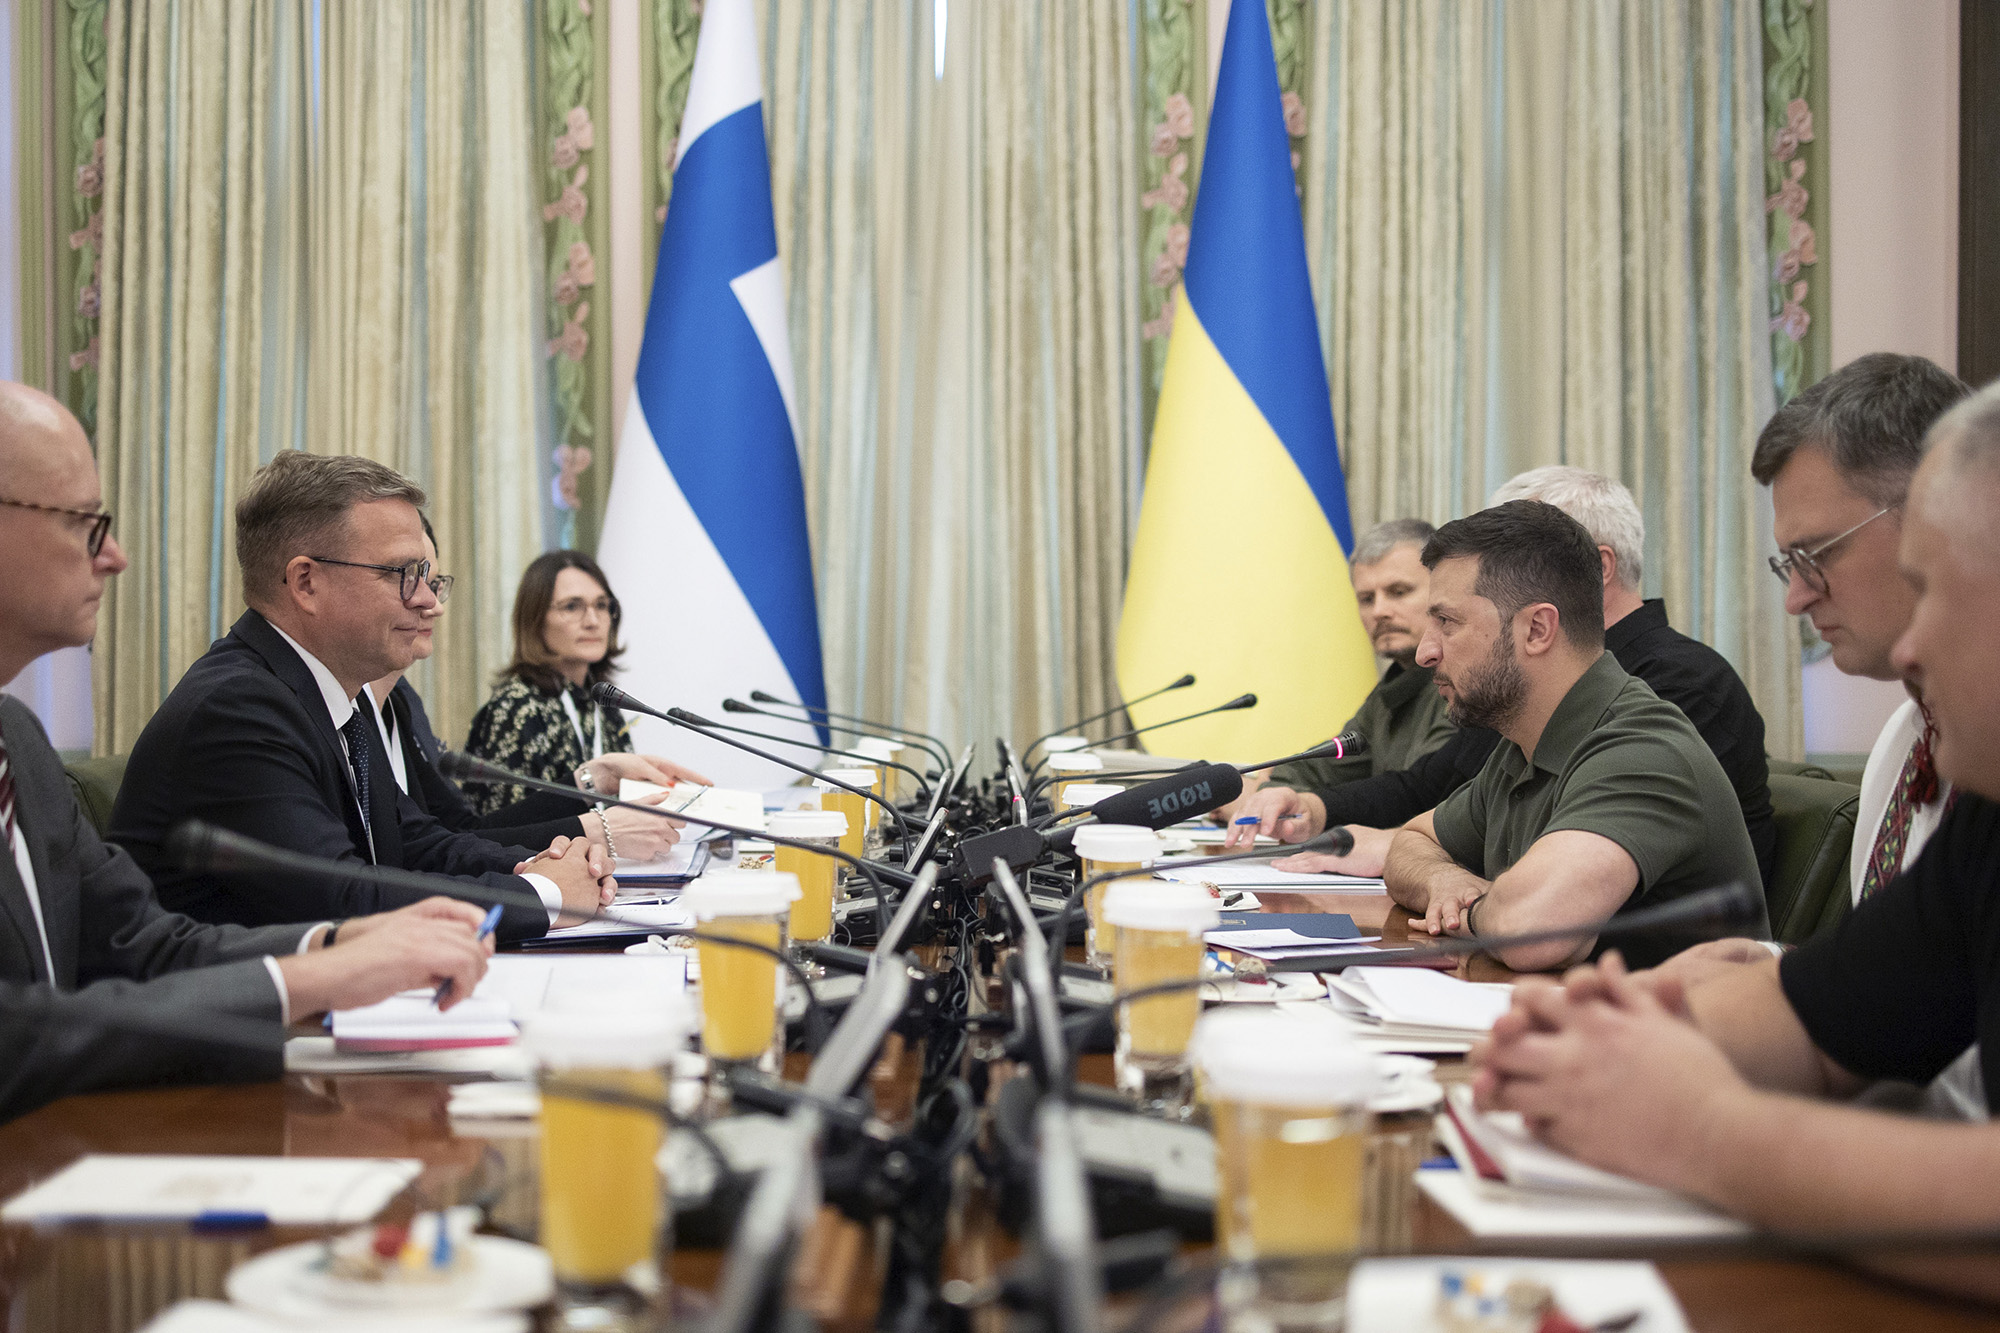 Ukrainian President Volodymyr Zelensky, right, and Prime Minister of Finland Petteri Orpo talk in Kyiv, Ukraine, on August 23.